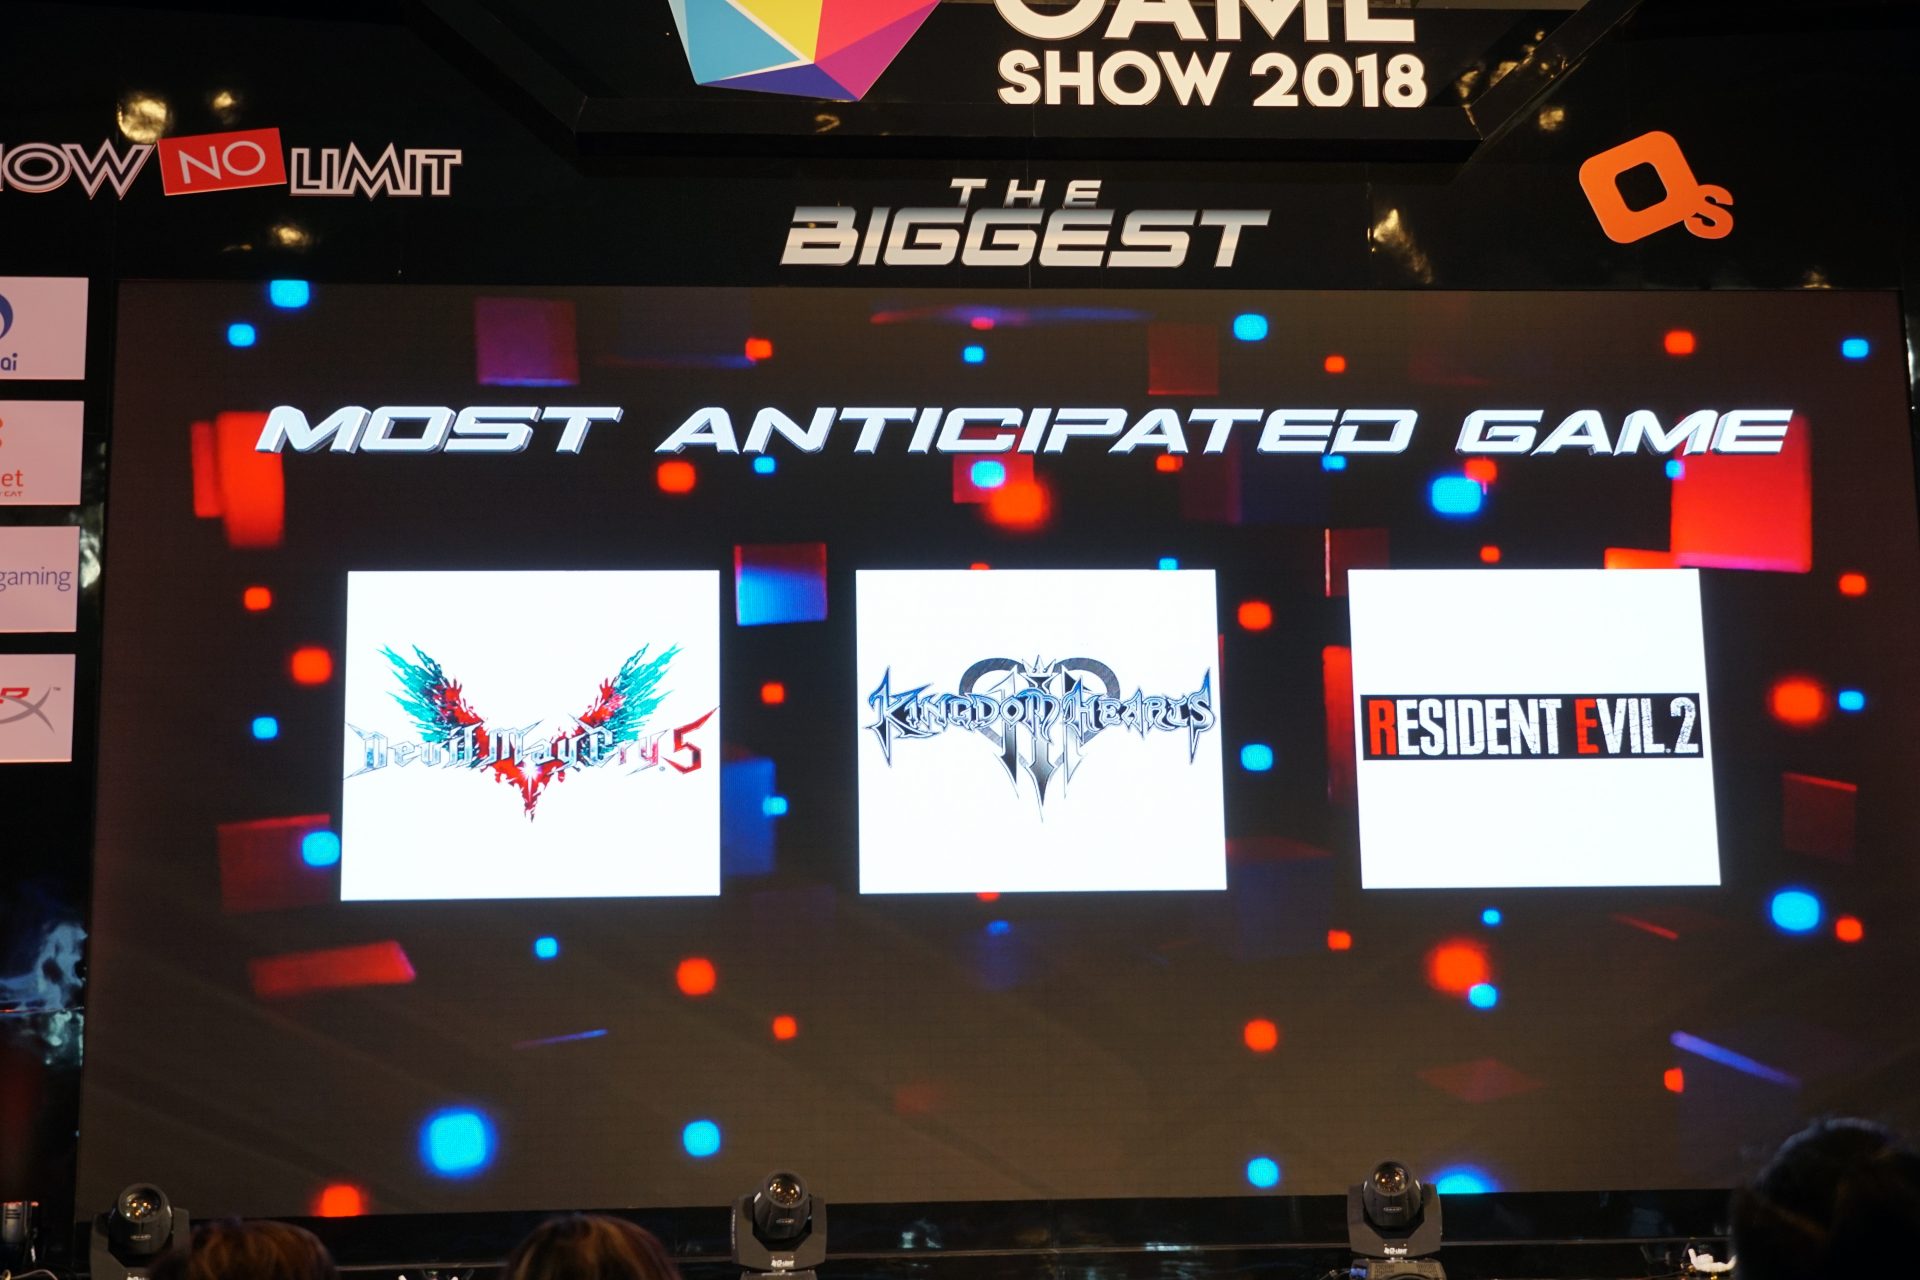 รวมผลรางวัลจากเวที The Game Awards 2019 - GG2